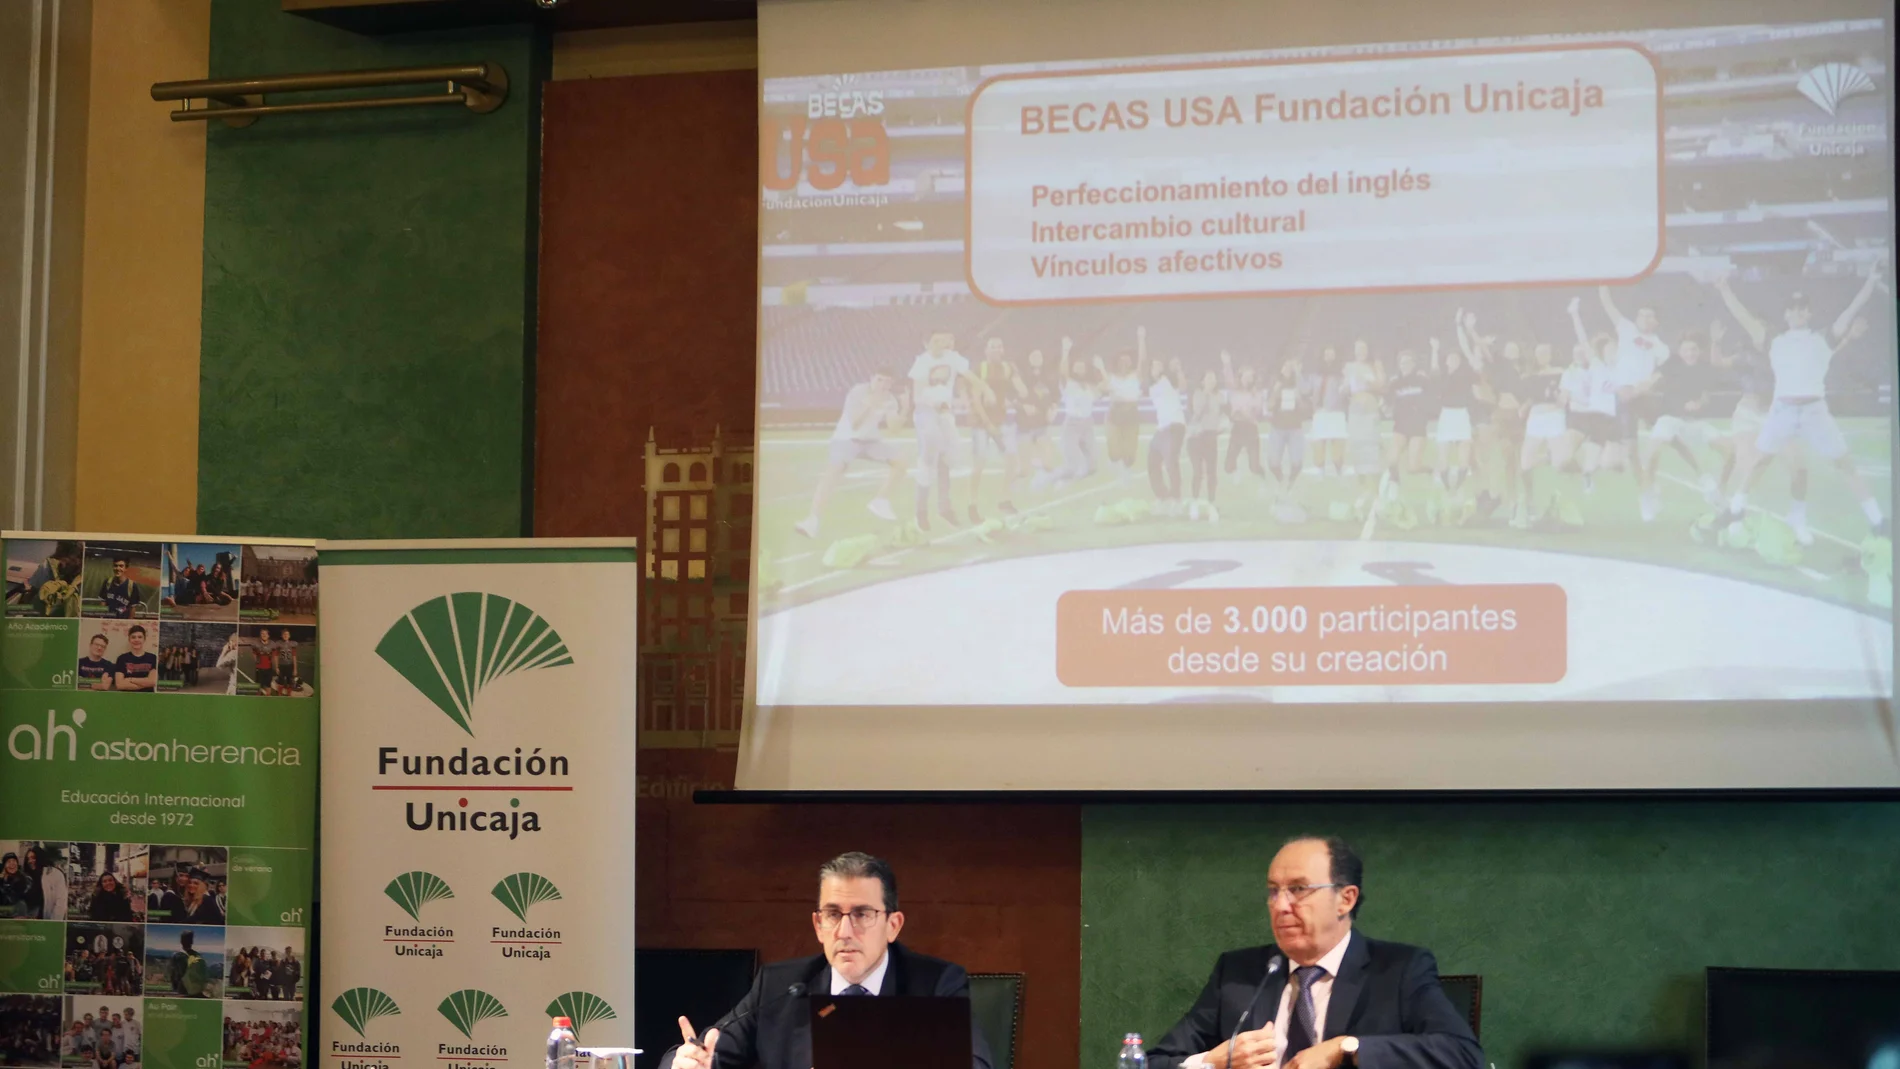 Presentación de las Becas USA de fundación Unicaja